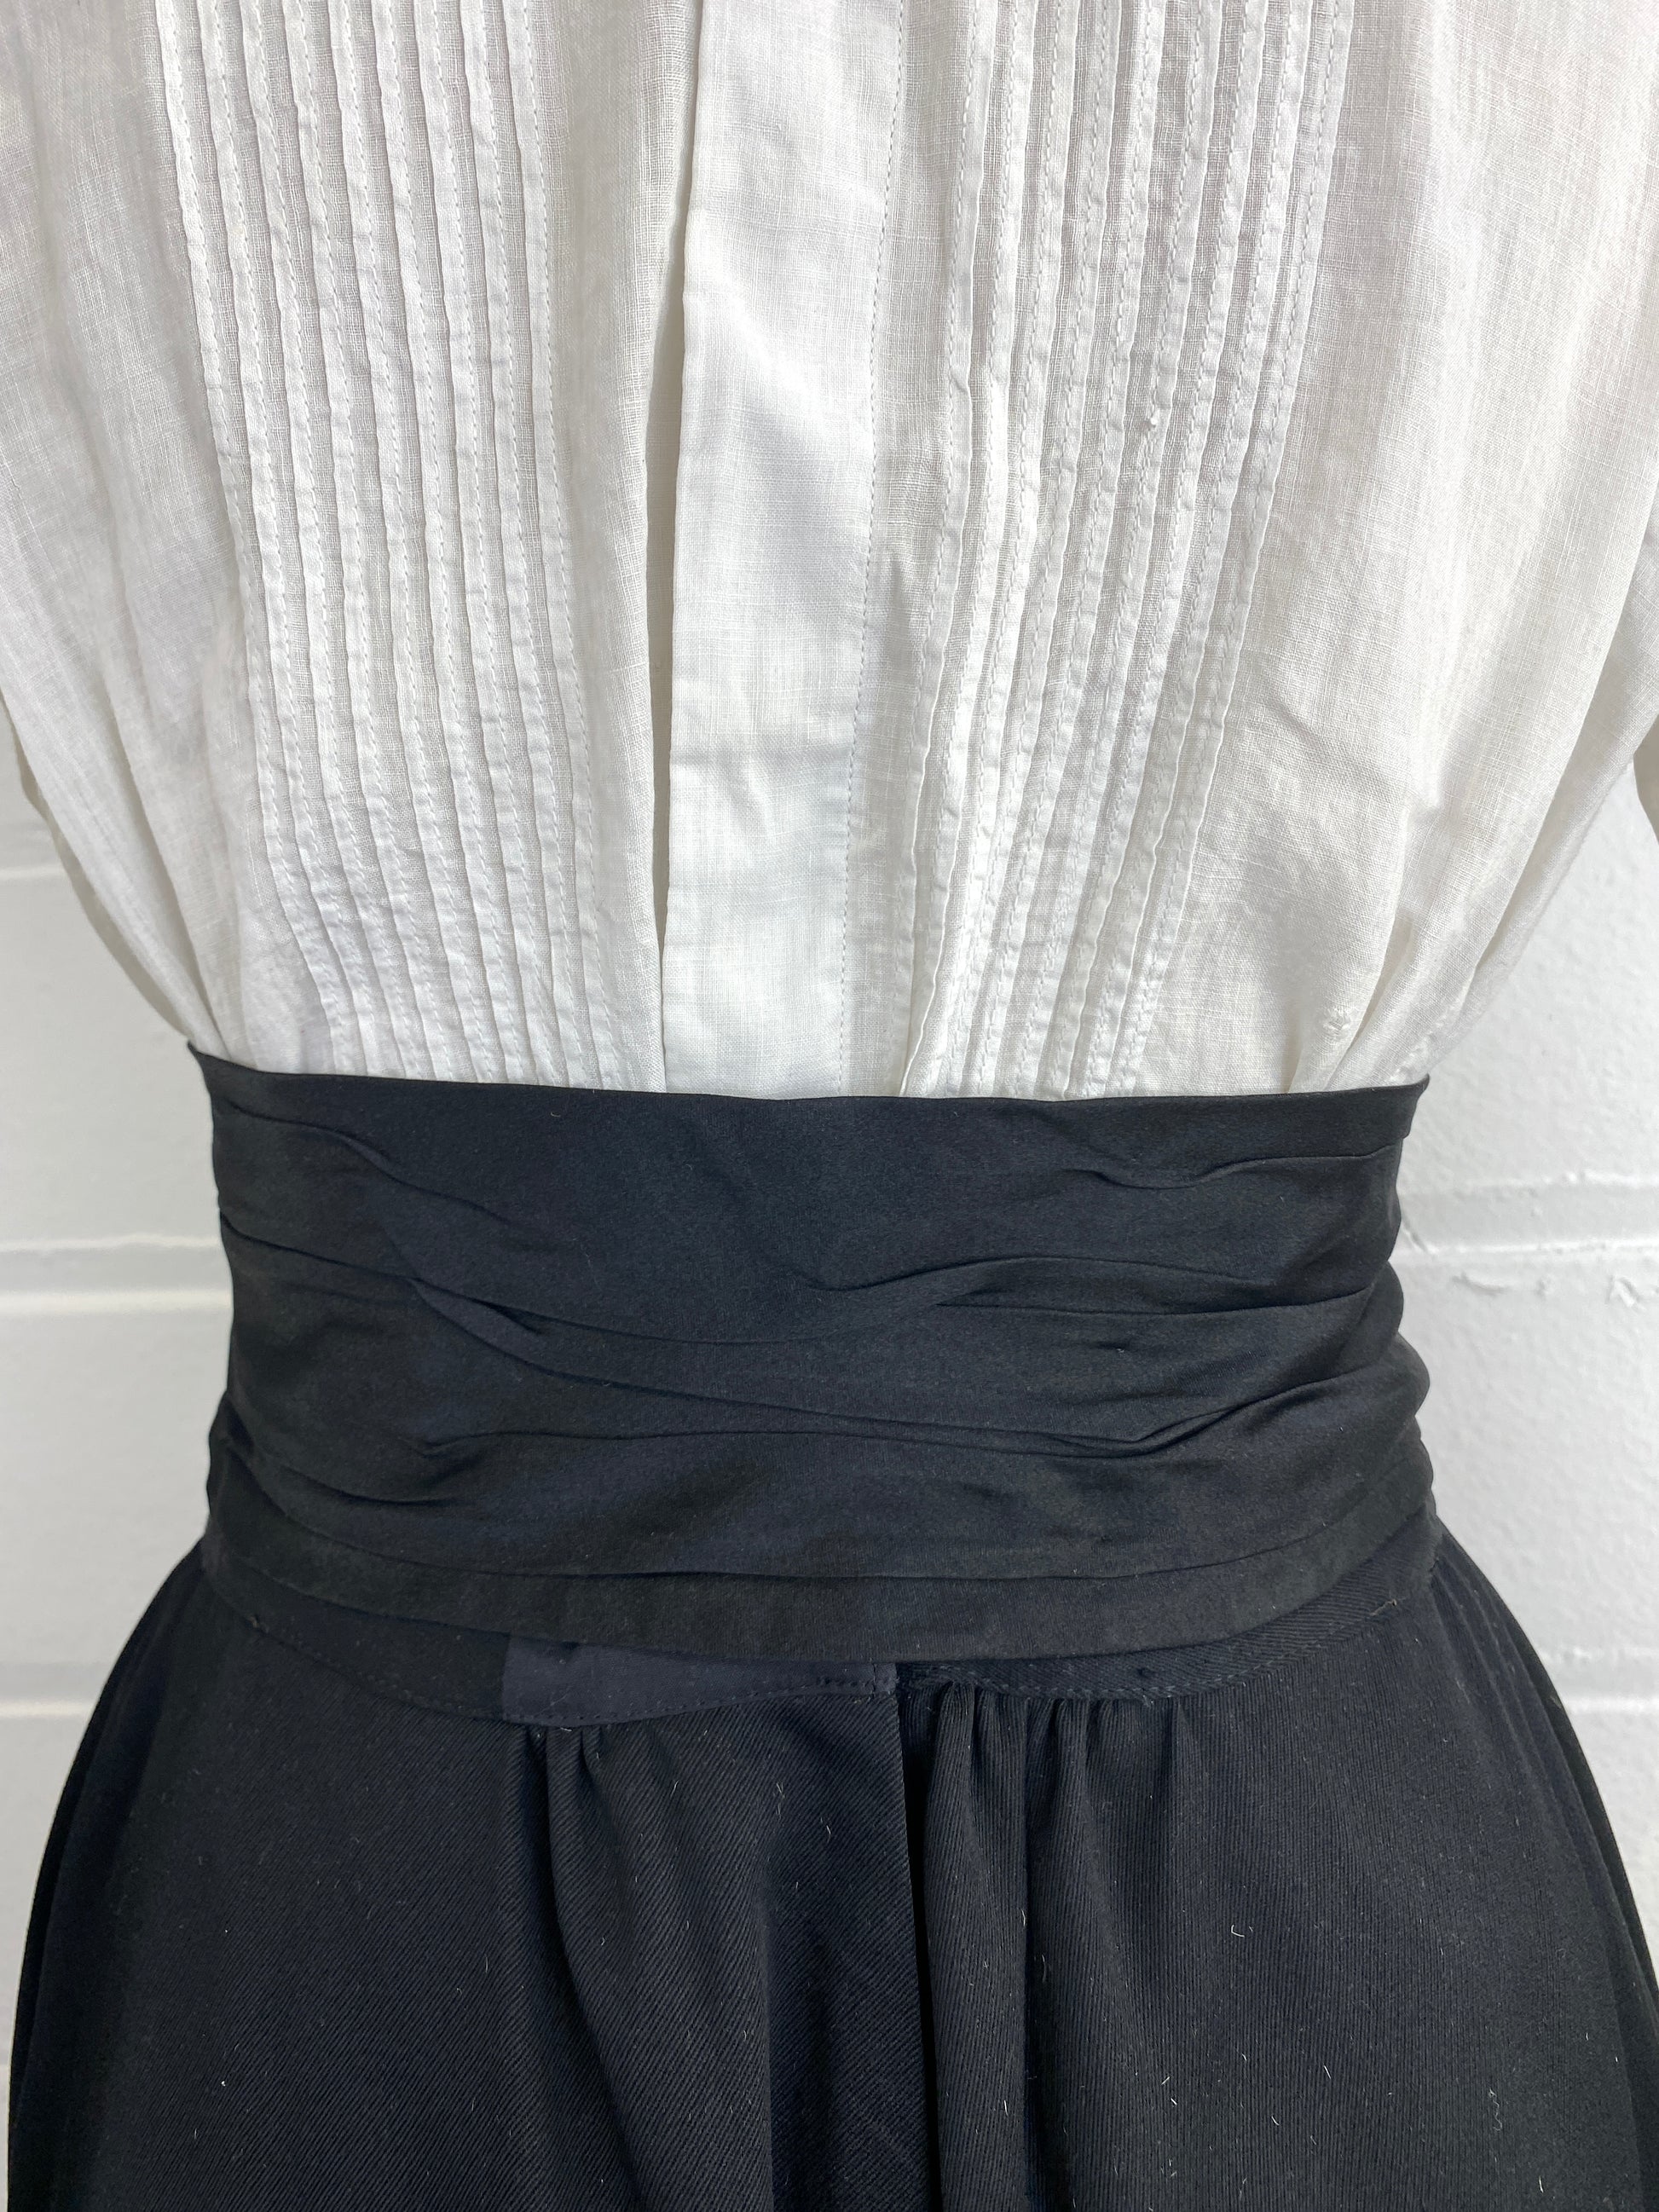 Antique Victorian Women's Black Satin Cummerbund Style Sash Belt, 24"